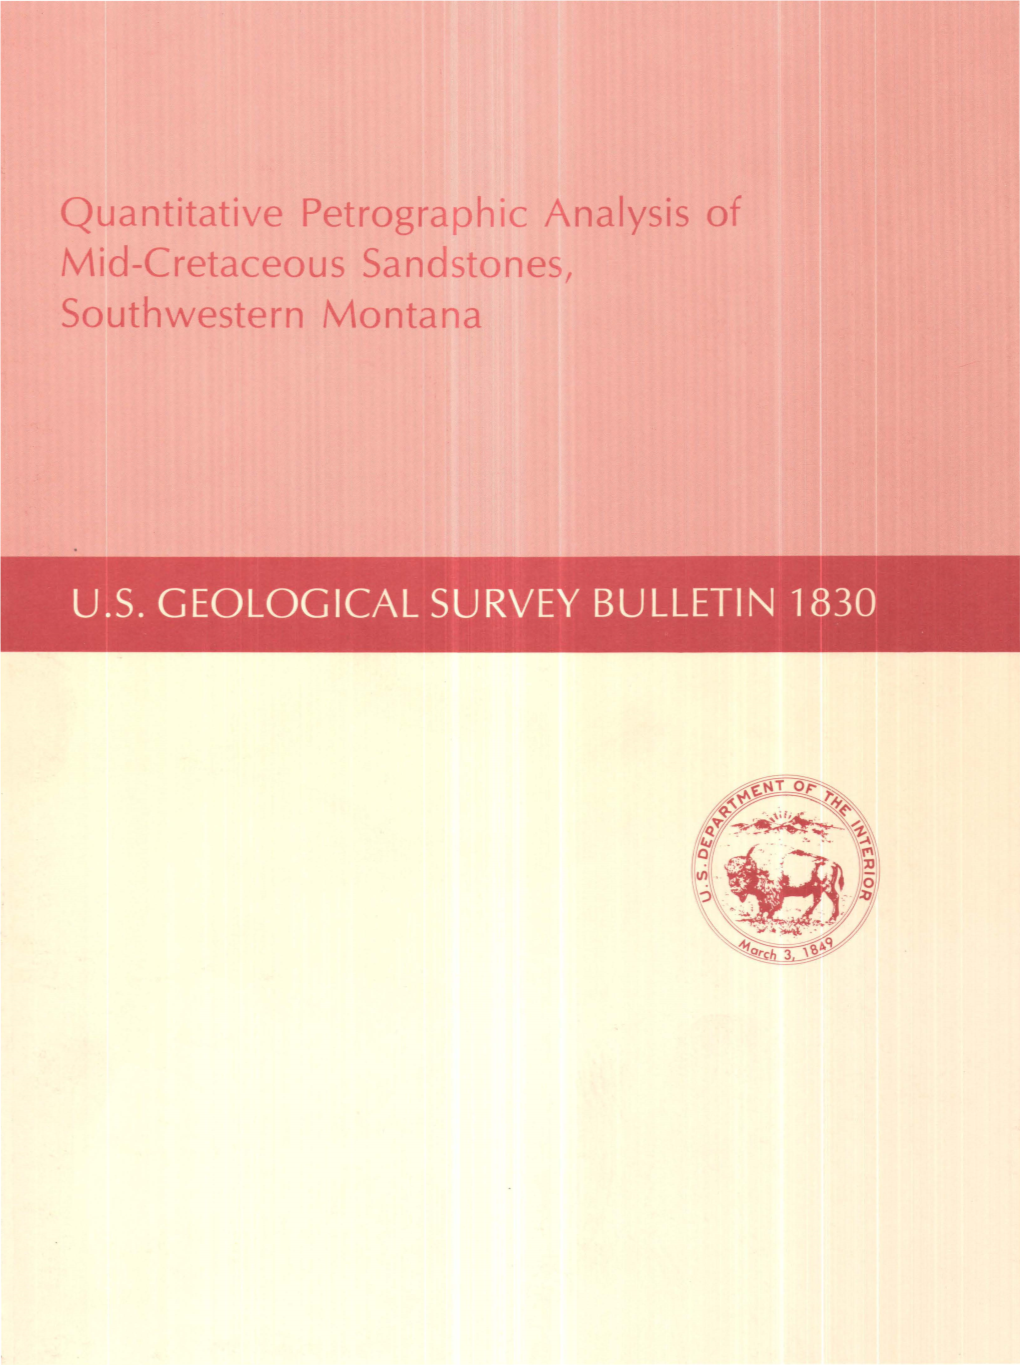 Quantitative Petrographic Anafysis of Mid-Cretaceous Sandstones, Southwestern